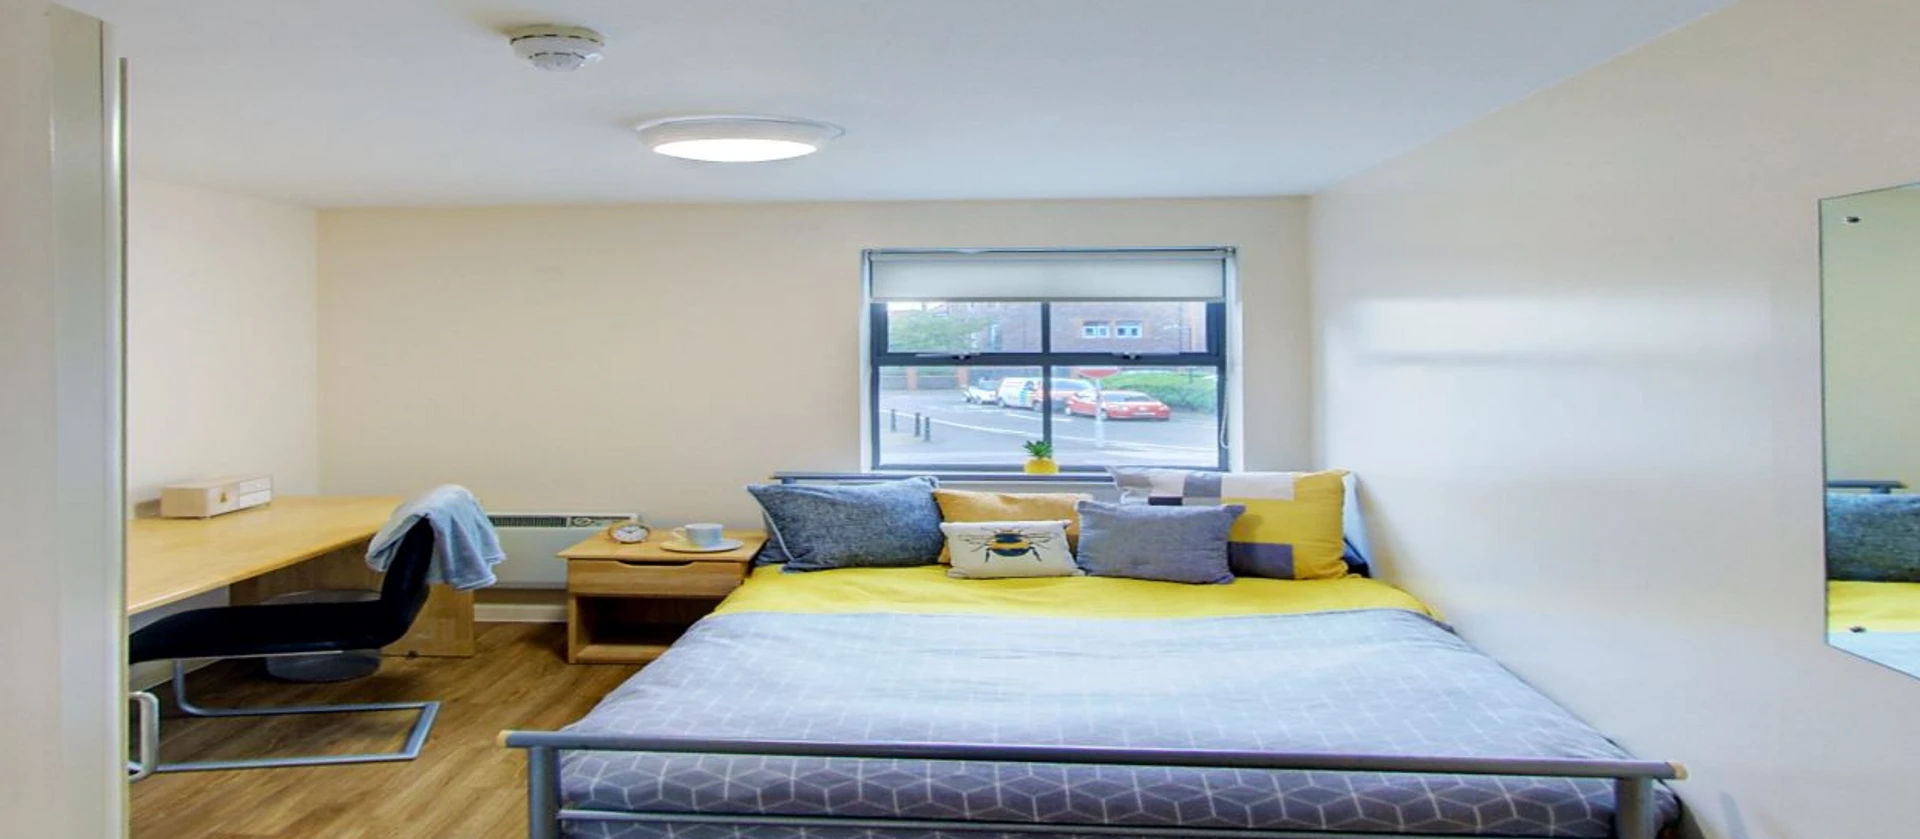 Alquiler de habitaciones por meses en Bristol